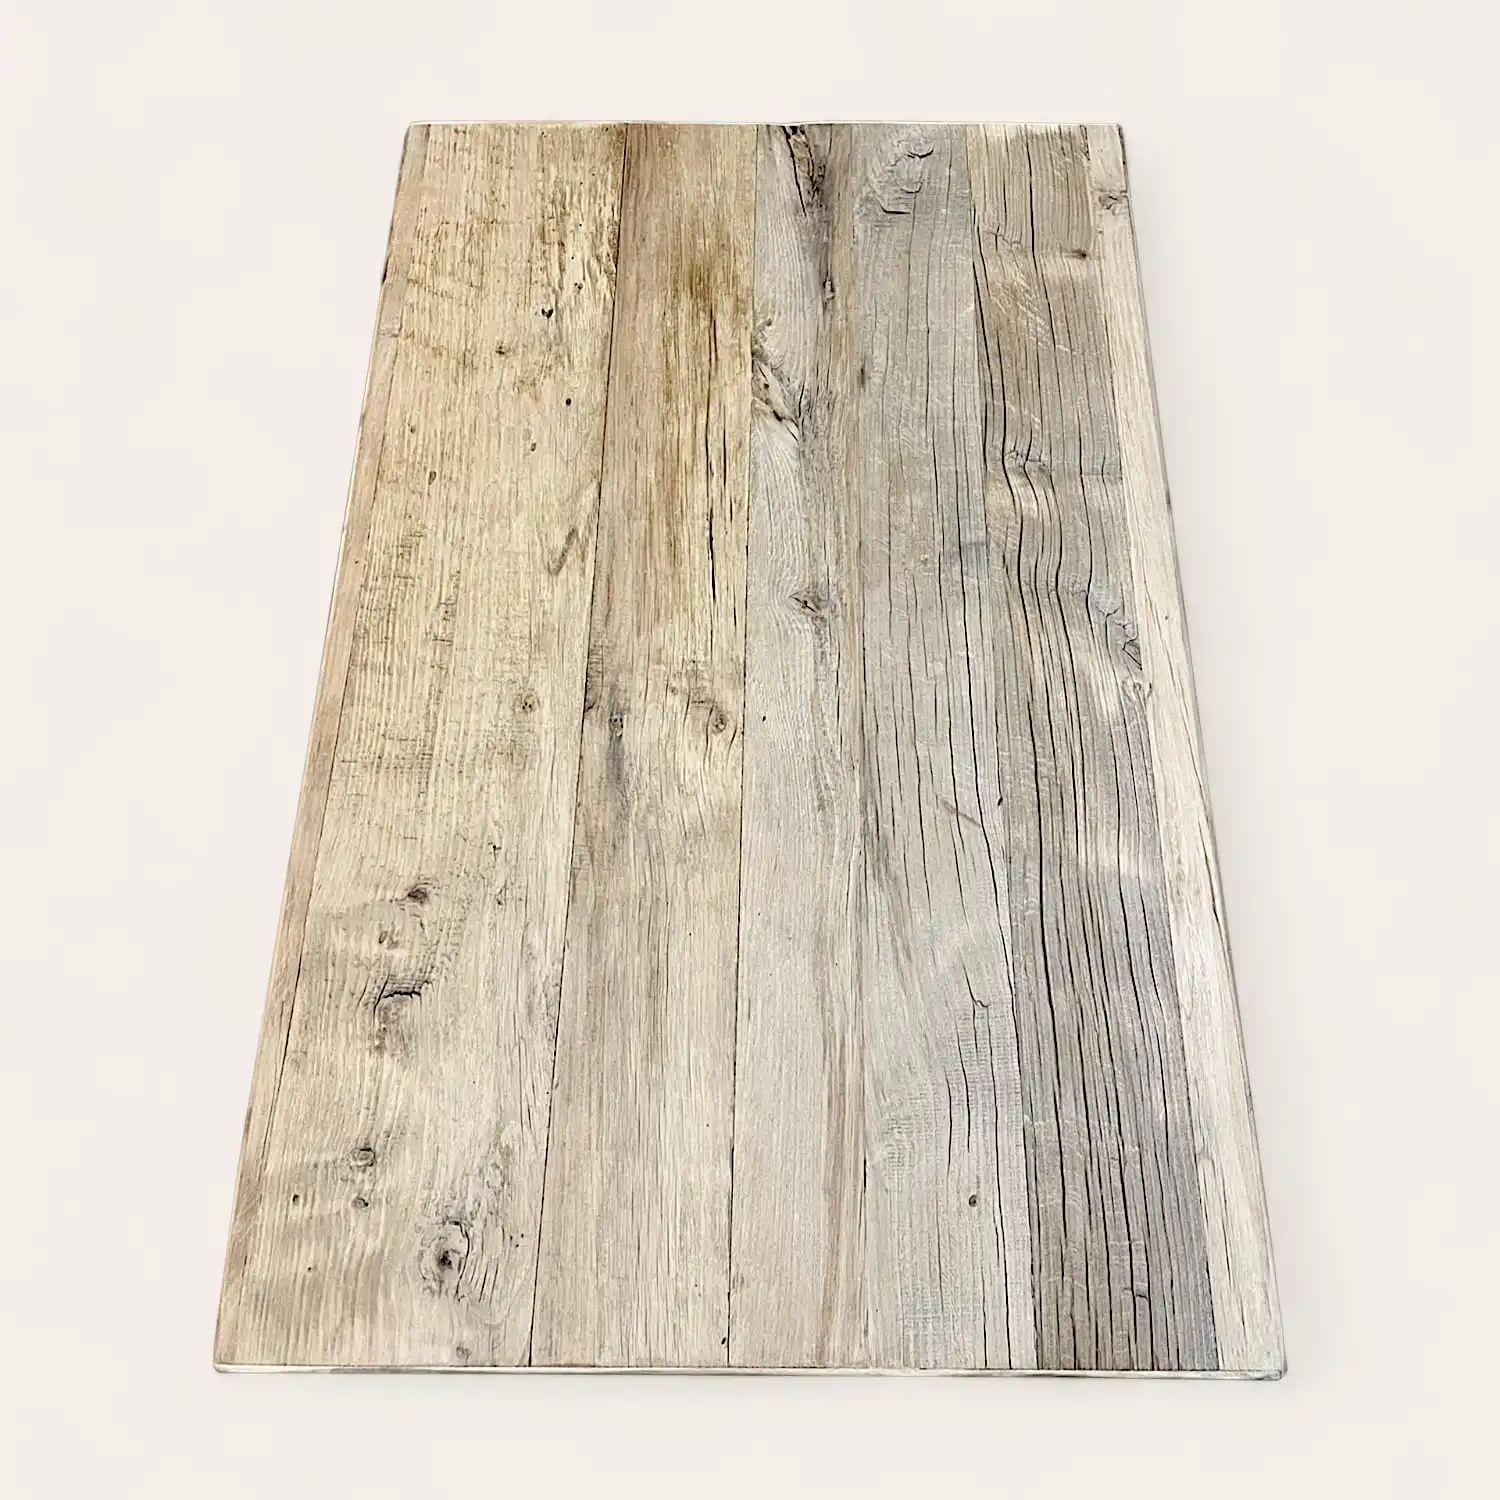  Une planche de bois rectangulaire aux motifs de textures délavées et patinées, posée sur un fond blanc, est un exemple classique de « panneaux vieux bois ». 